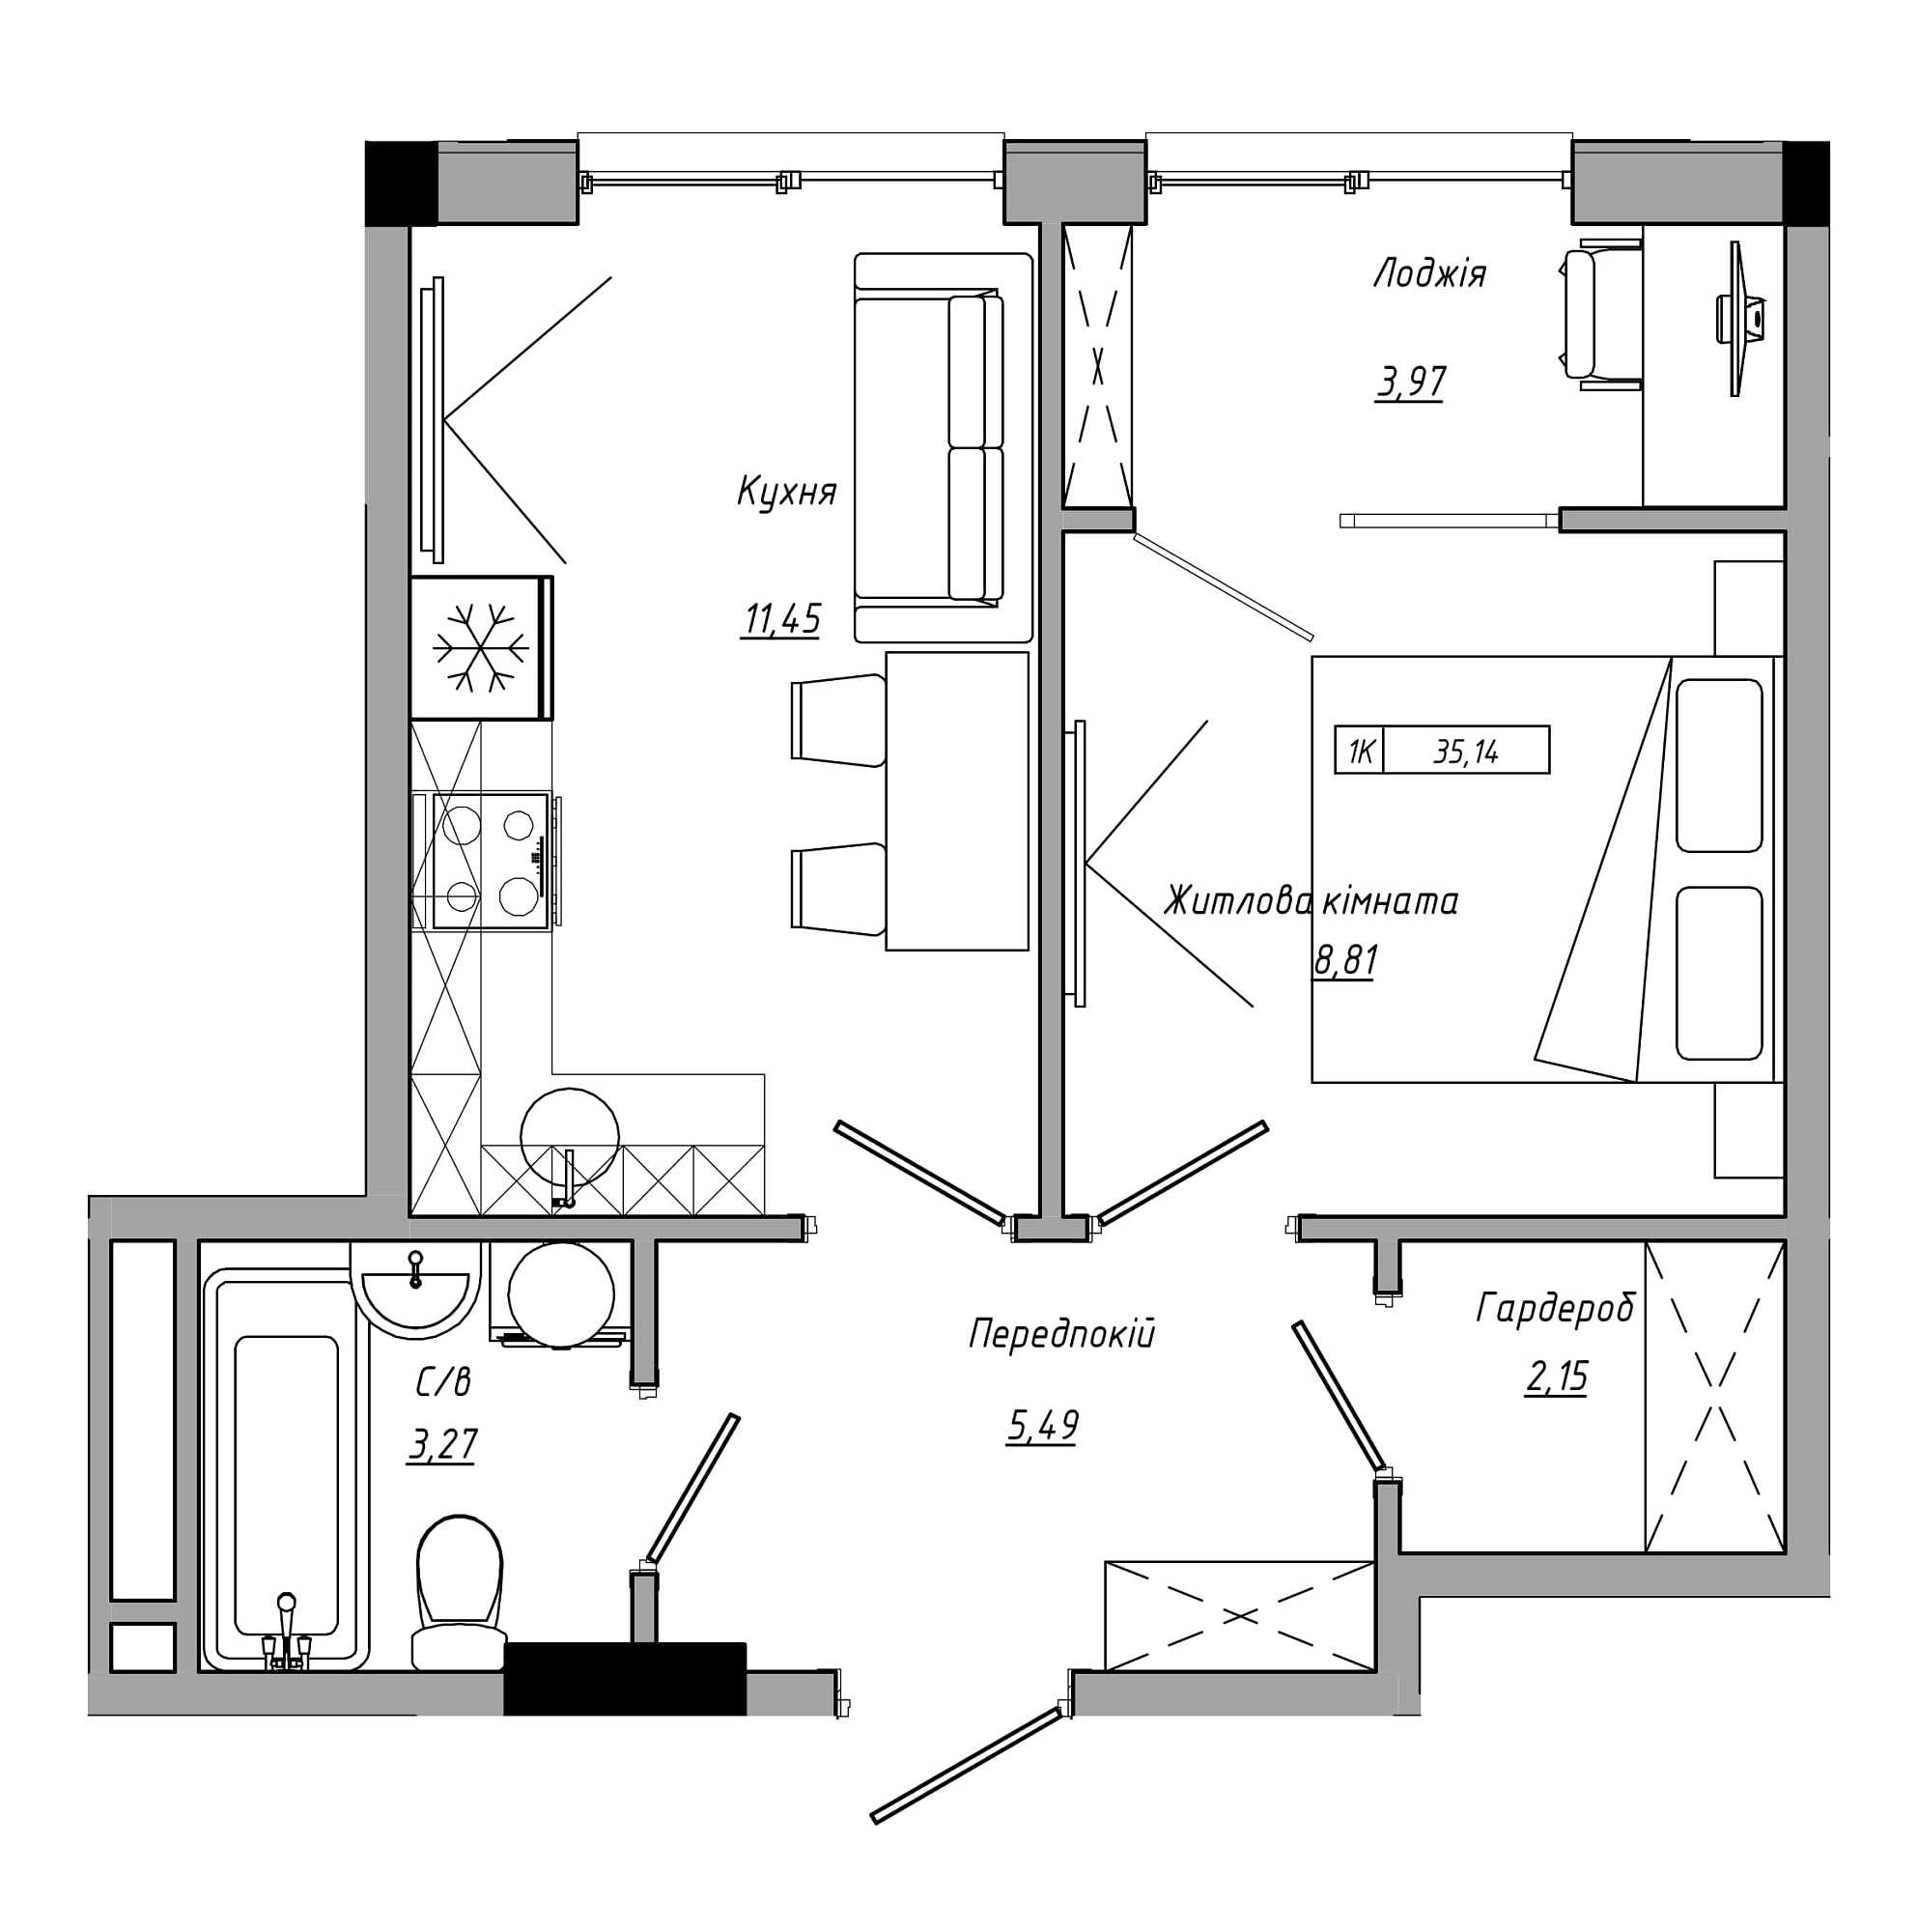 Планировка 1-к квартира площей 35.14м2, AB-21-13/00113.